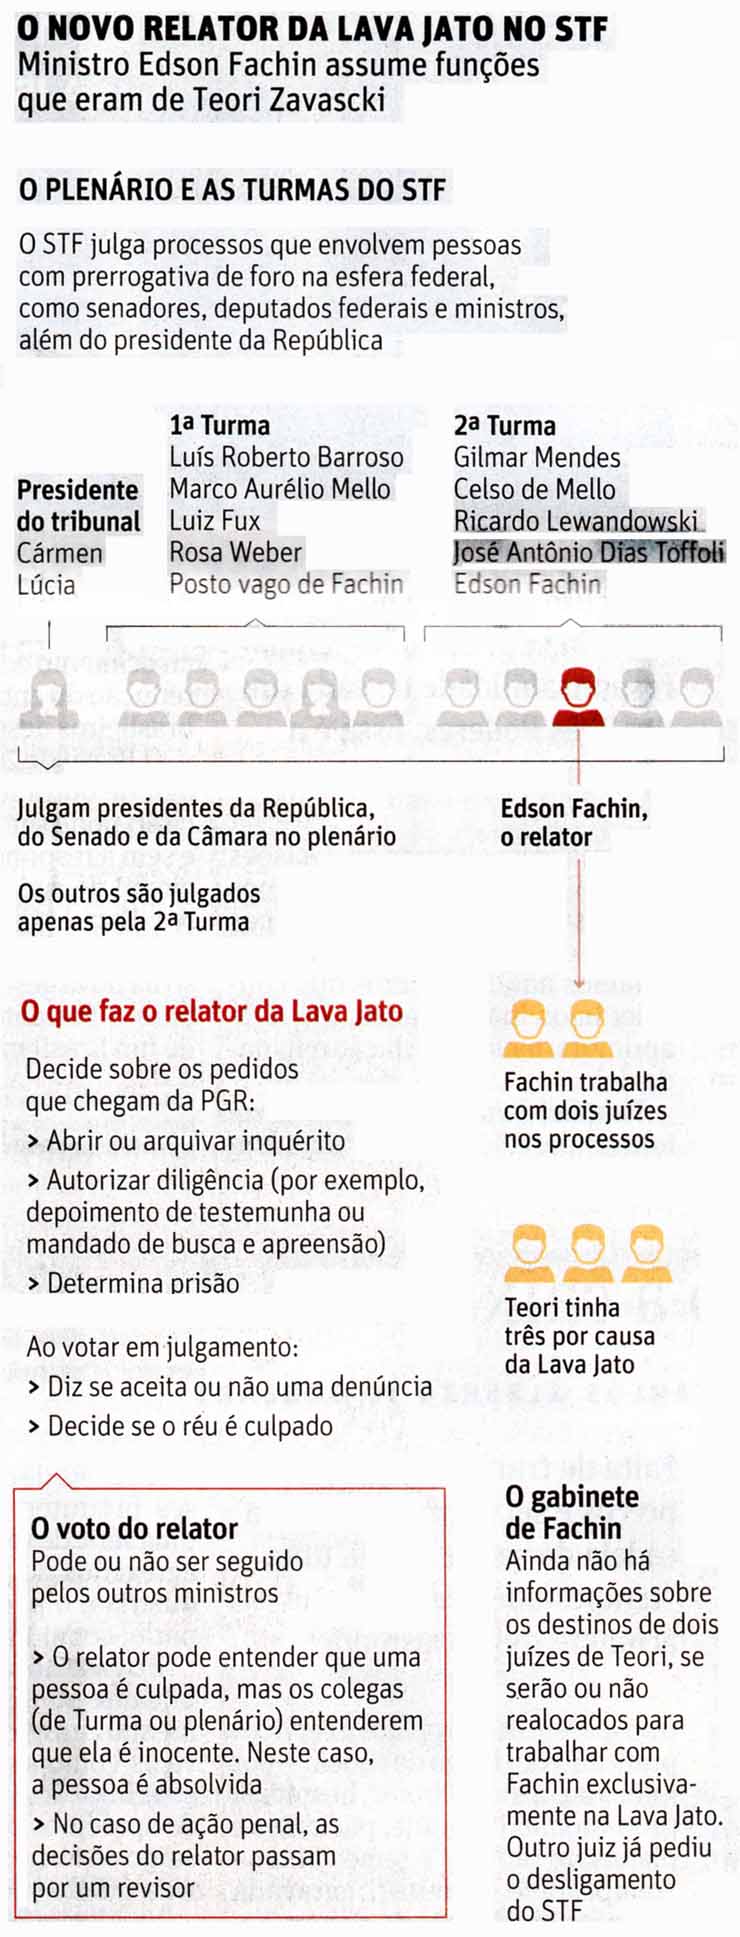 Lava Jato: O novo Relator - Folha de So Paulo / 03.02.2017